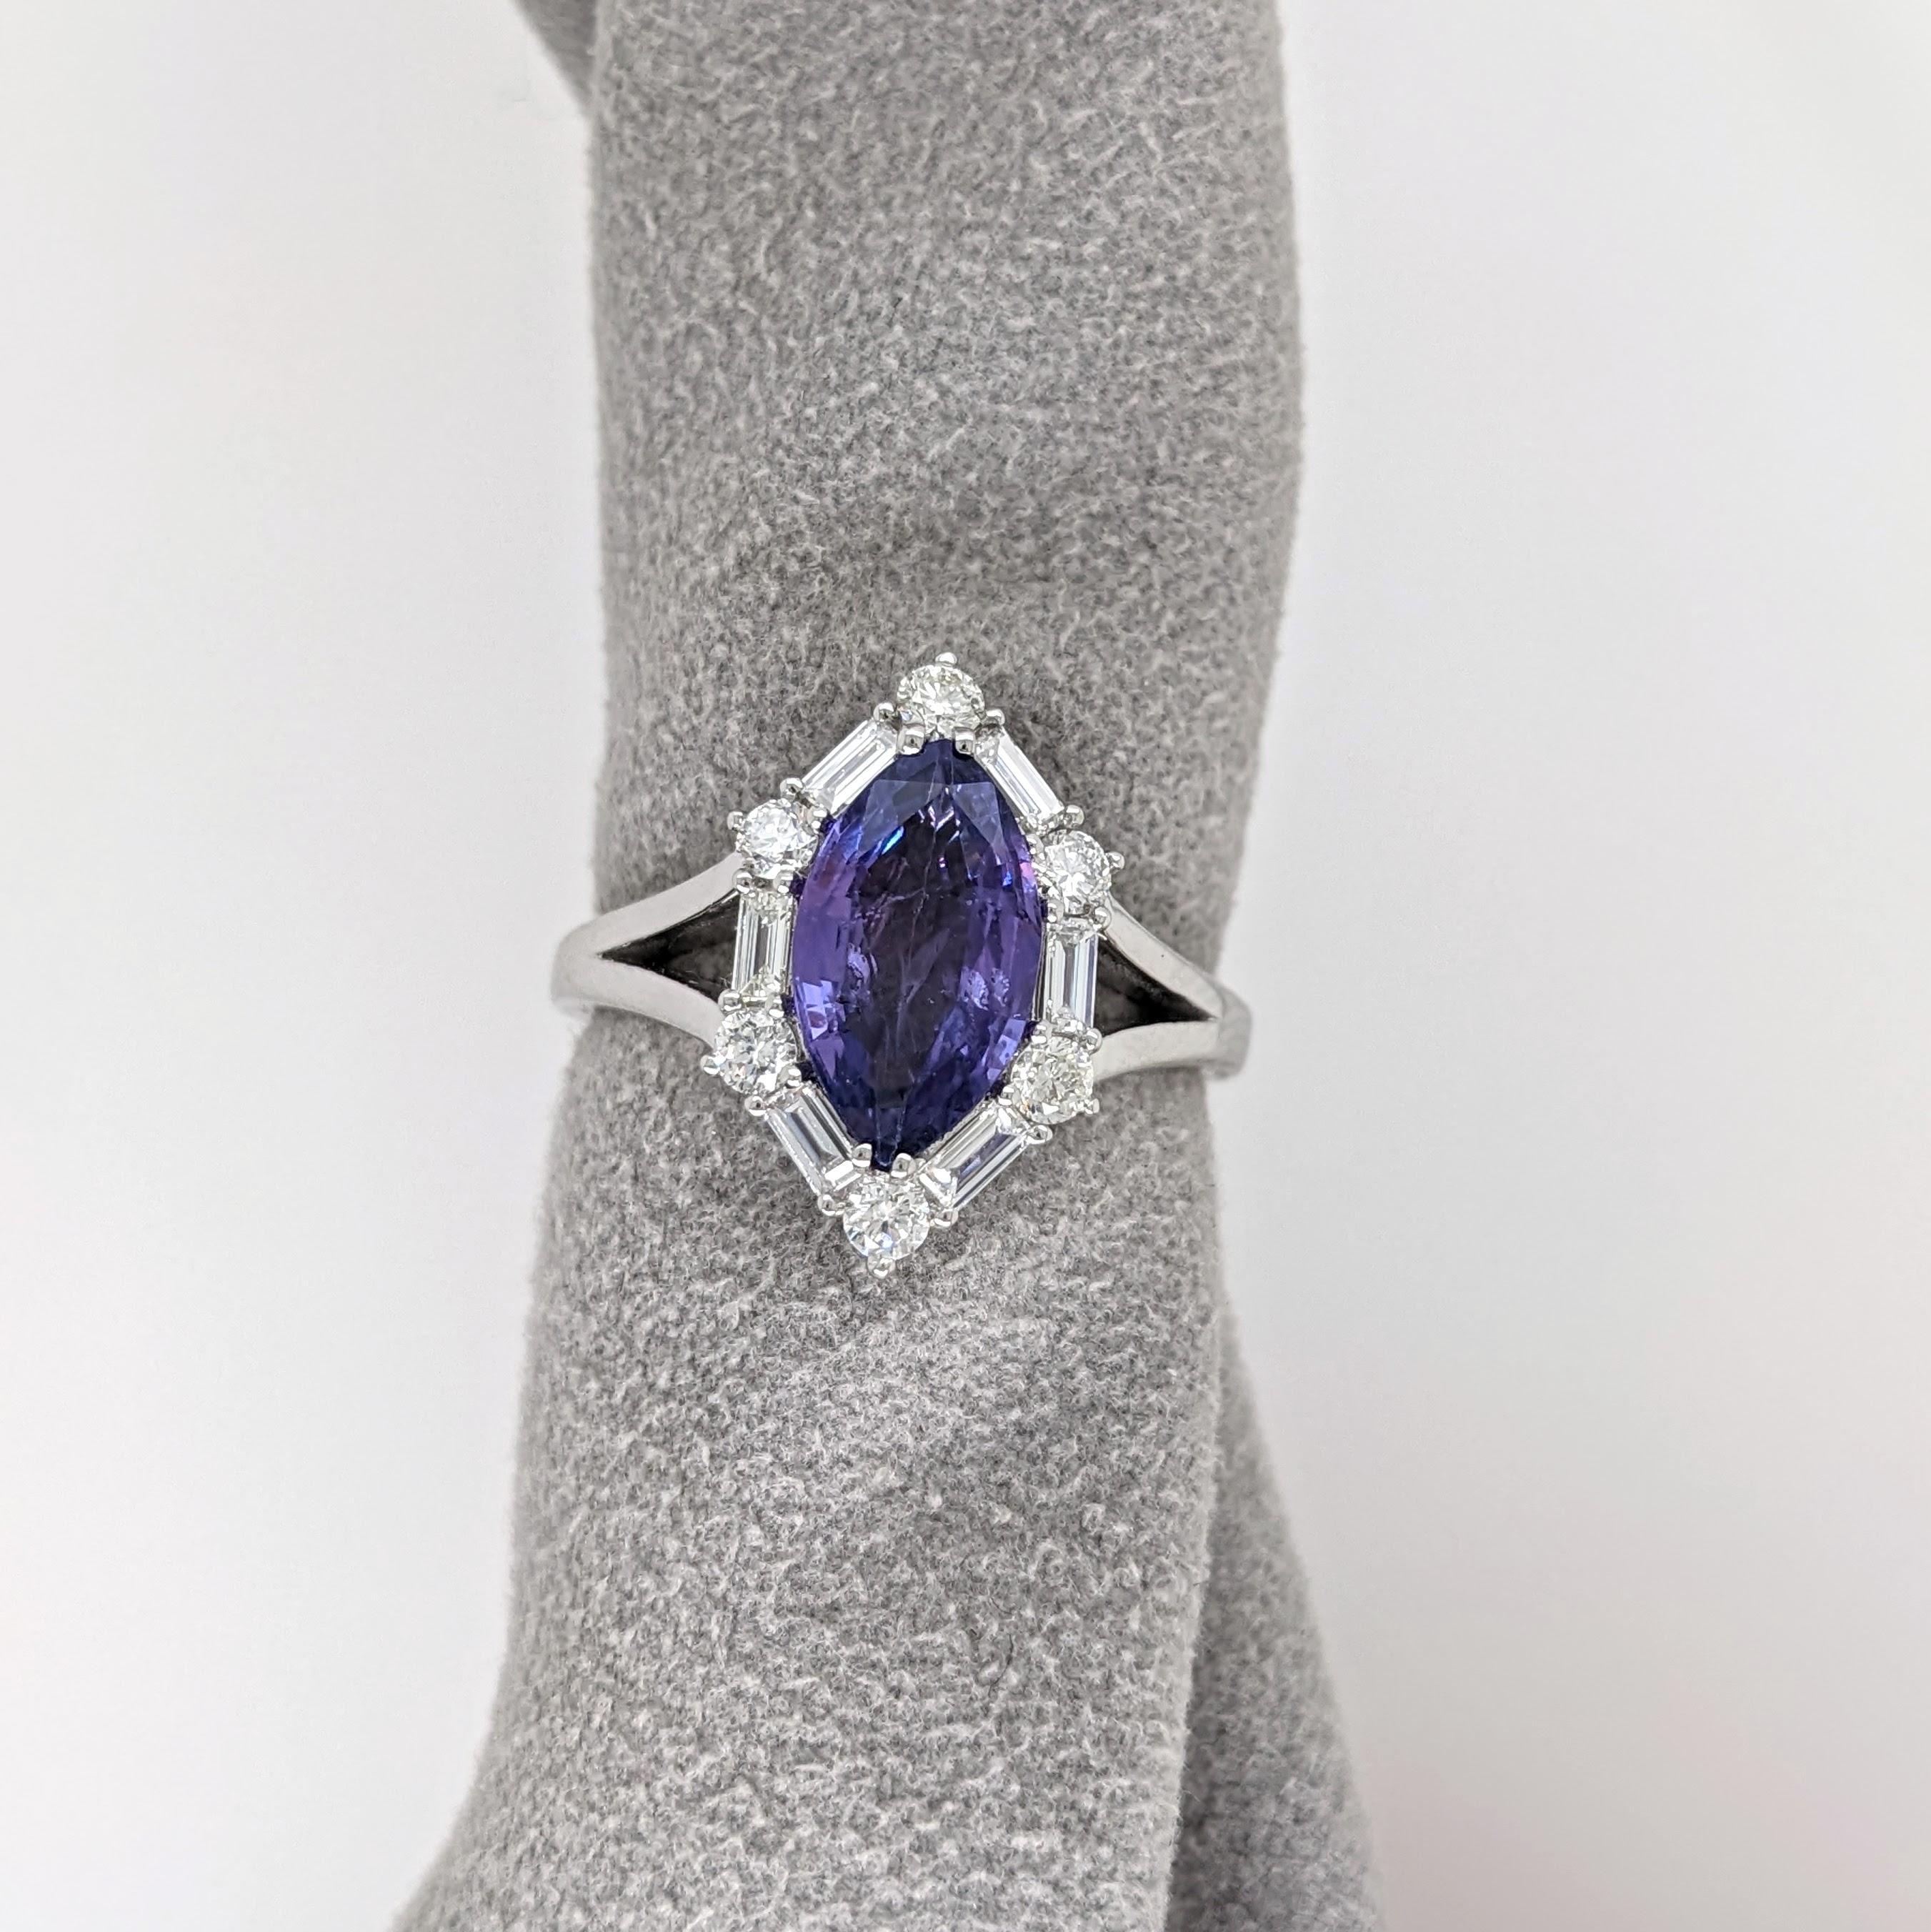 Dieser einzigartige Ring besteht aus einem 2-karätigen marquiseförmigen lila Saphir mit natürlichen Diamanten, die in der Erde abgebaut wurden, gefasst in massivem 14-karätigem Gold. Dieser Ring kann ein schönes Geschenk für Ihre Liebsten sein!